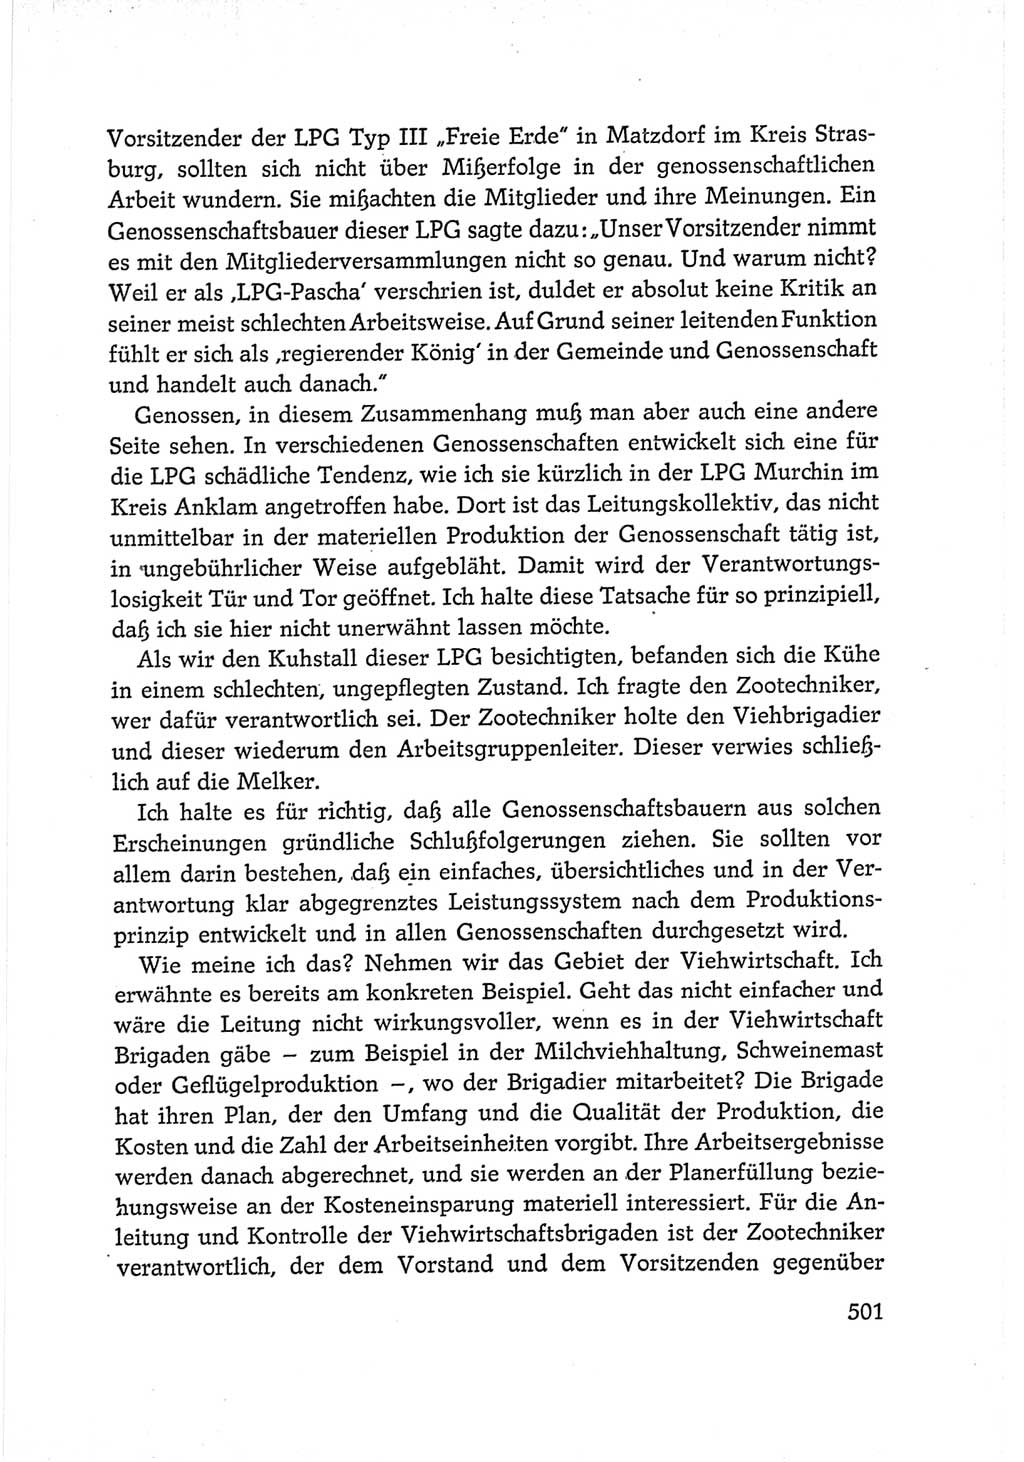 Protokoll der Verhandlungen des Ⅵ. Parteitages der Sozialistischen Einheitspartei Deutschlands (SED) [Deutsche Demokratische Republik (DDR)] 1963, Band Ⅰ, Seite 501 (Prot. Verh. Ⅵ. PT SED DDR 1963, Bd. Ⅰ, S. 501)